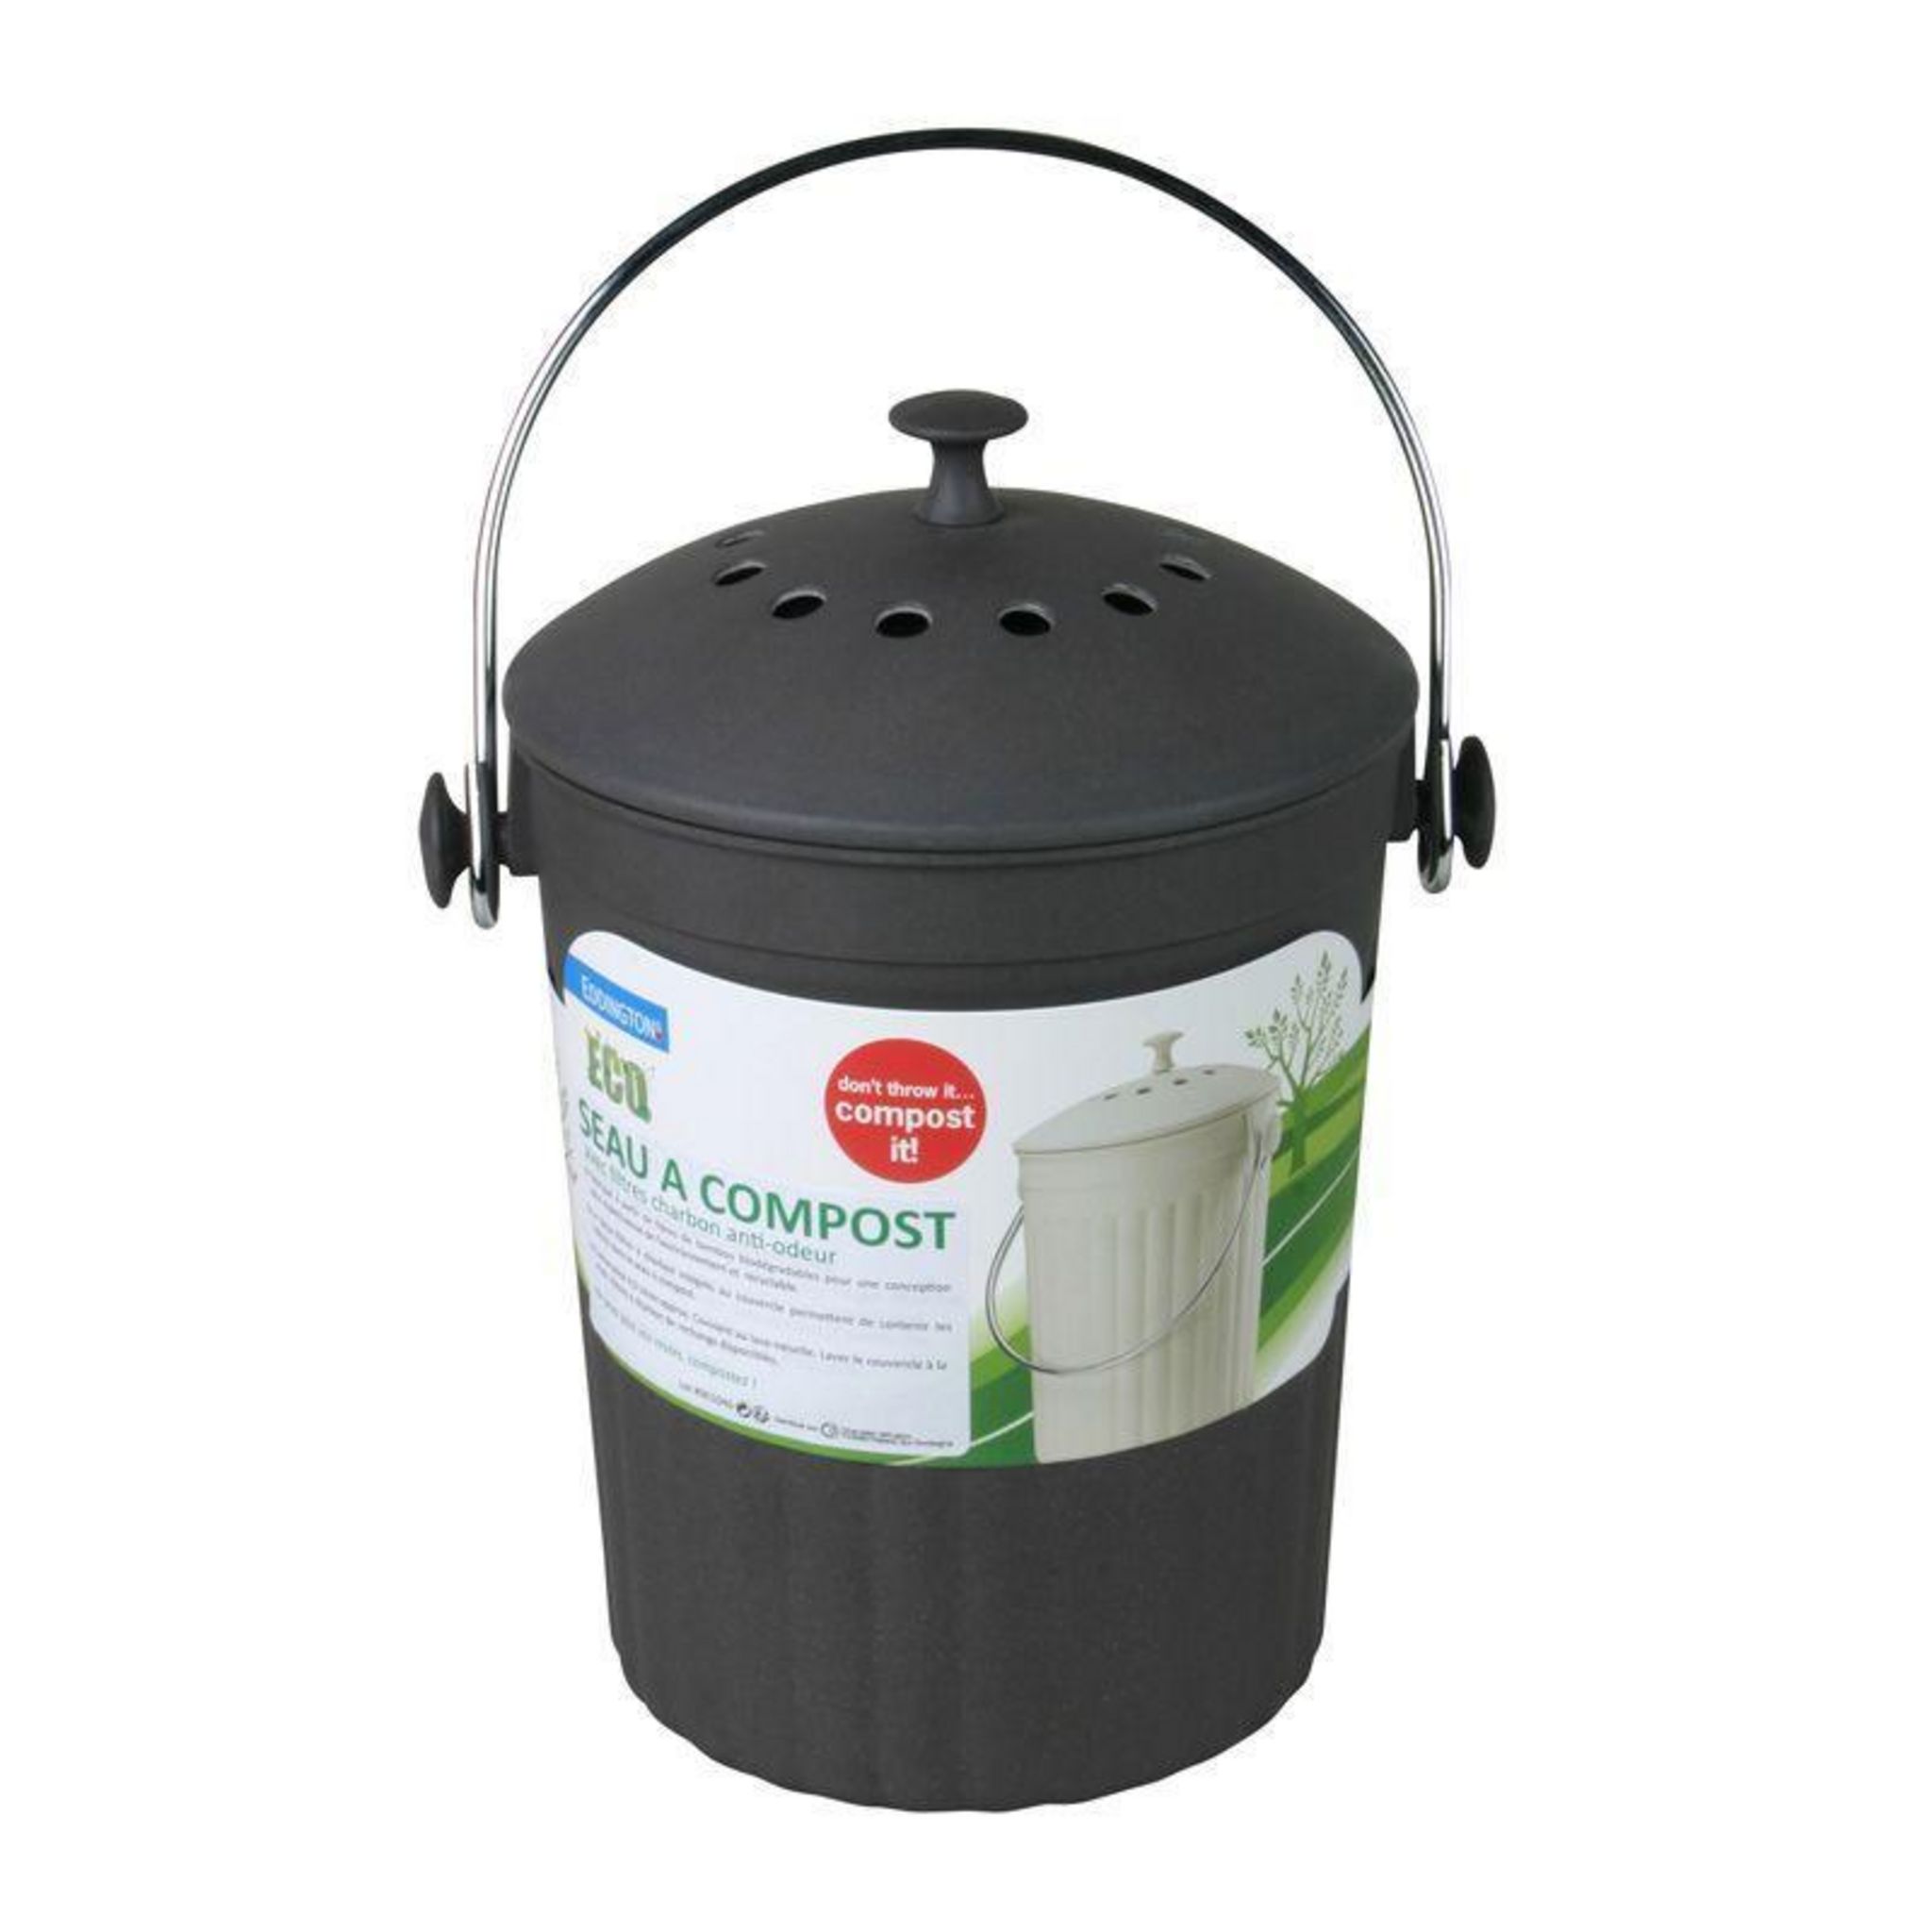 Bio seau - Poubelle à compost anti odeur, vente au meilleur prix